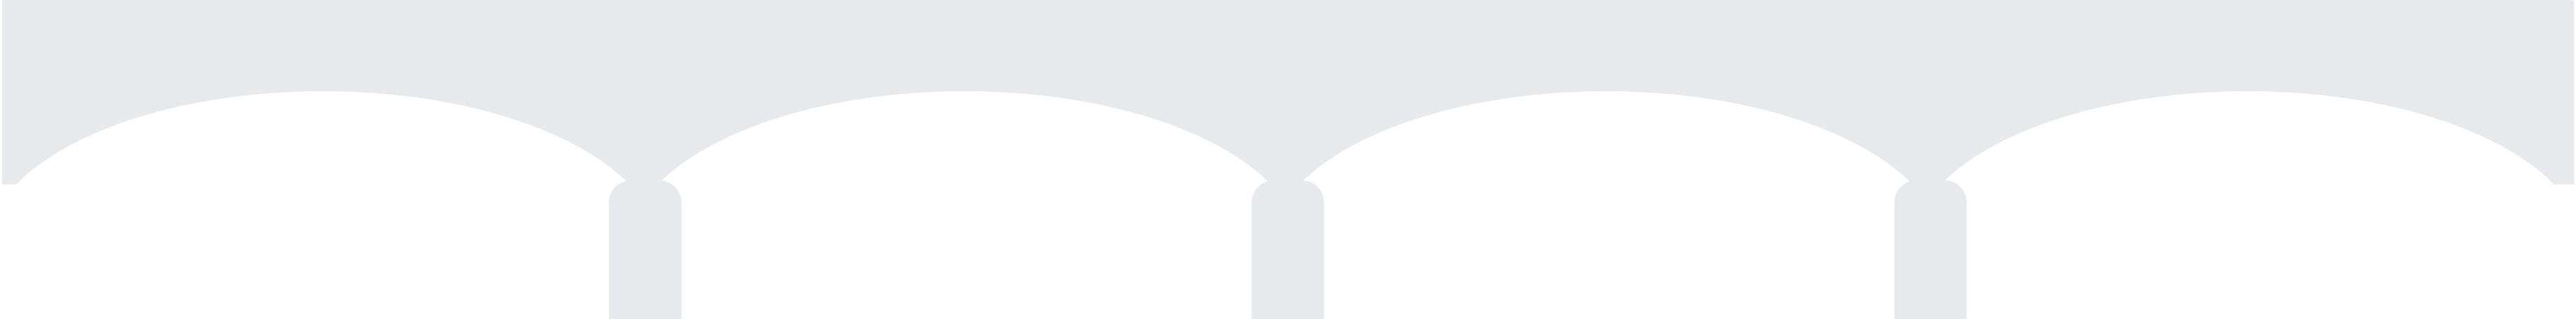 Illustration bridge in paris silhouette aux formats PNG, SVG